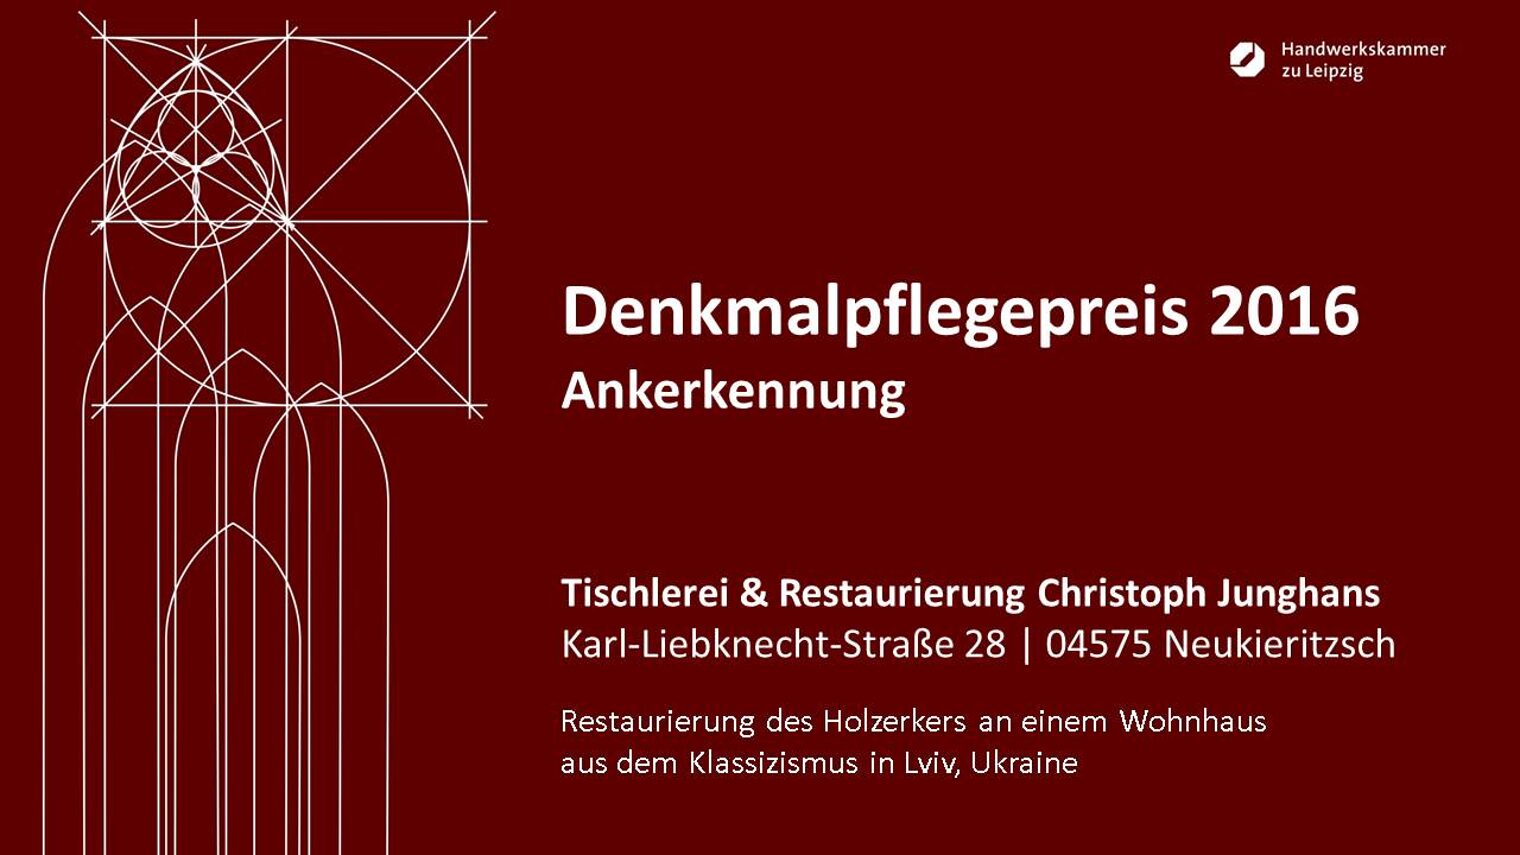 Tischlerei & Restaurierung Christoph Junghans: Restaurierung des Holzerkers an einem Wohnhaus aus dem Klassizismus in Lviv, Ukraine.